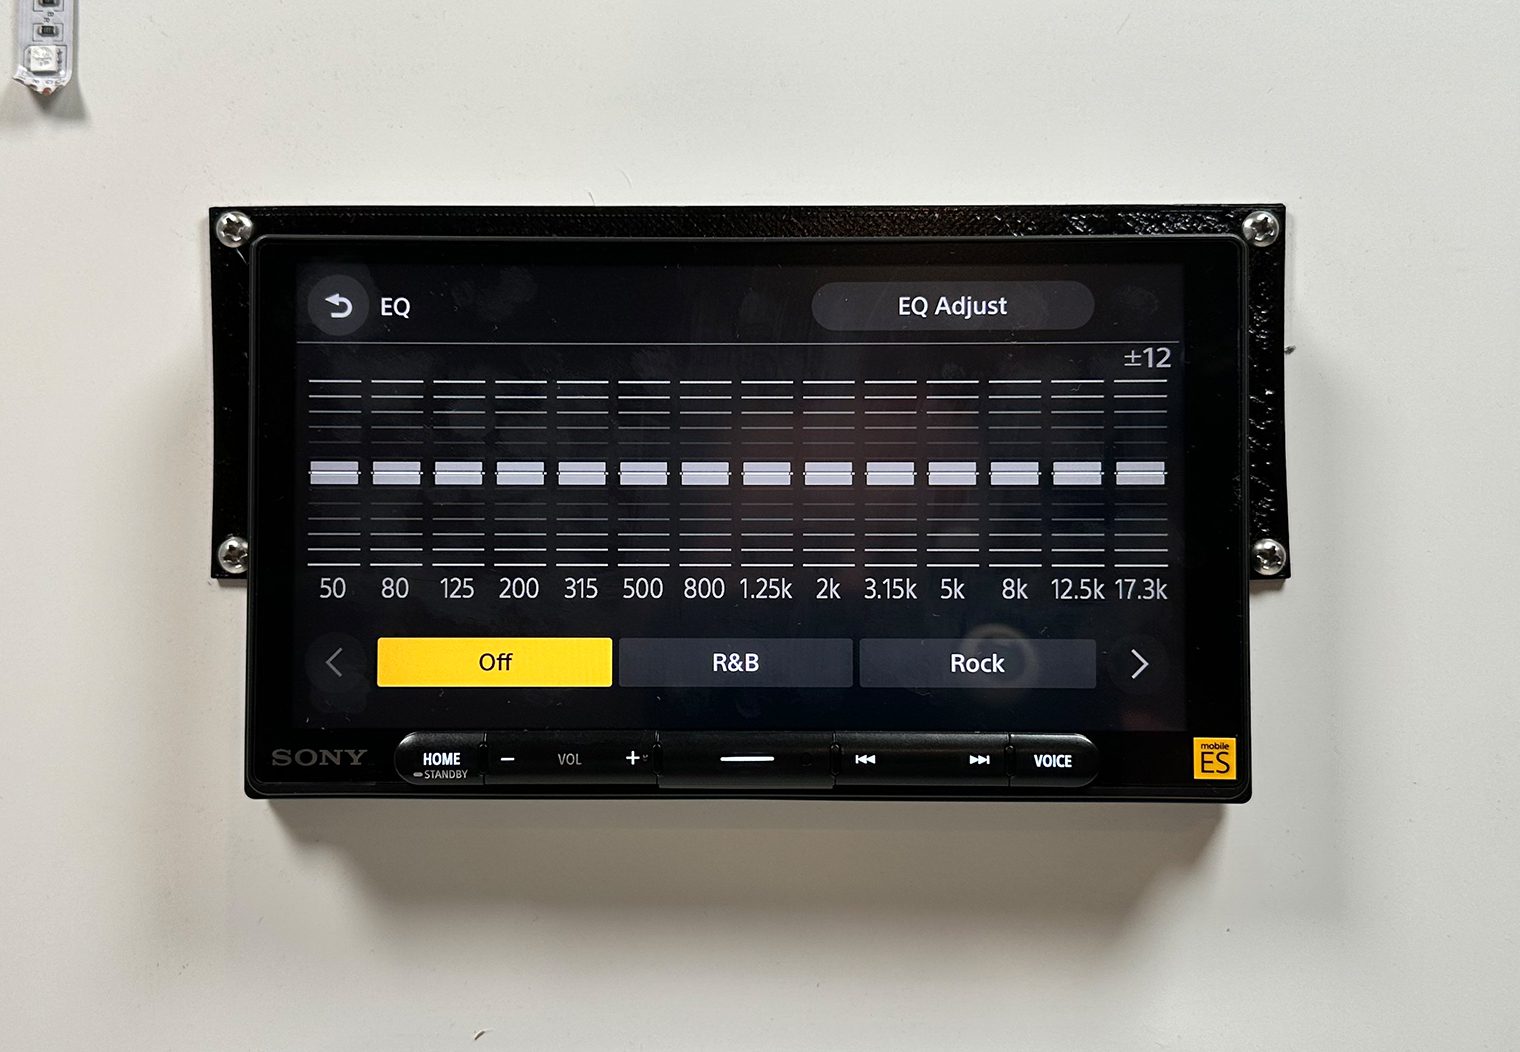 Sony XAV-9000ES graphic eq interface